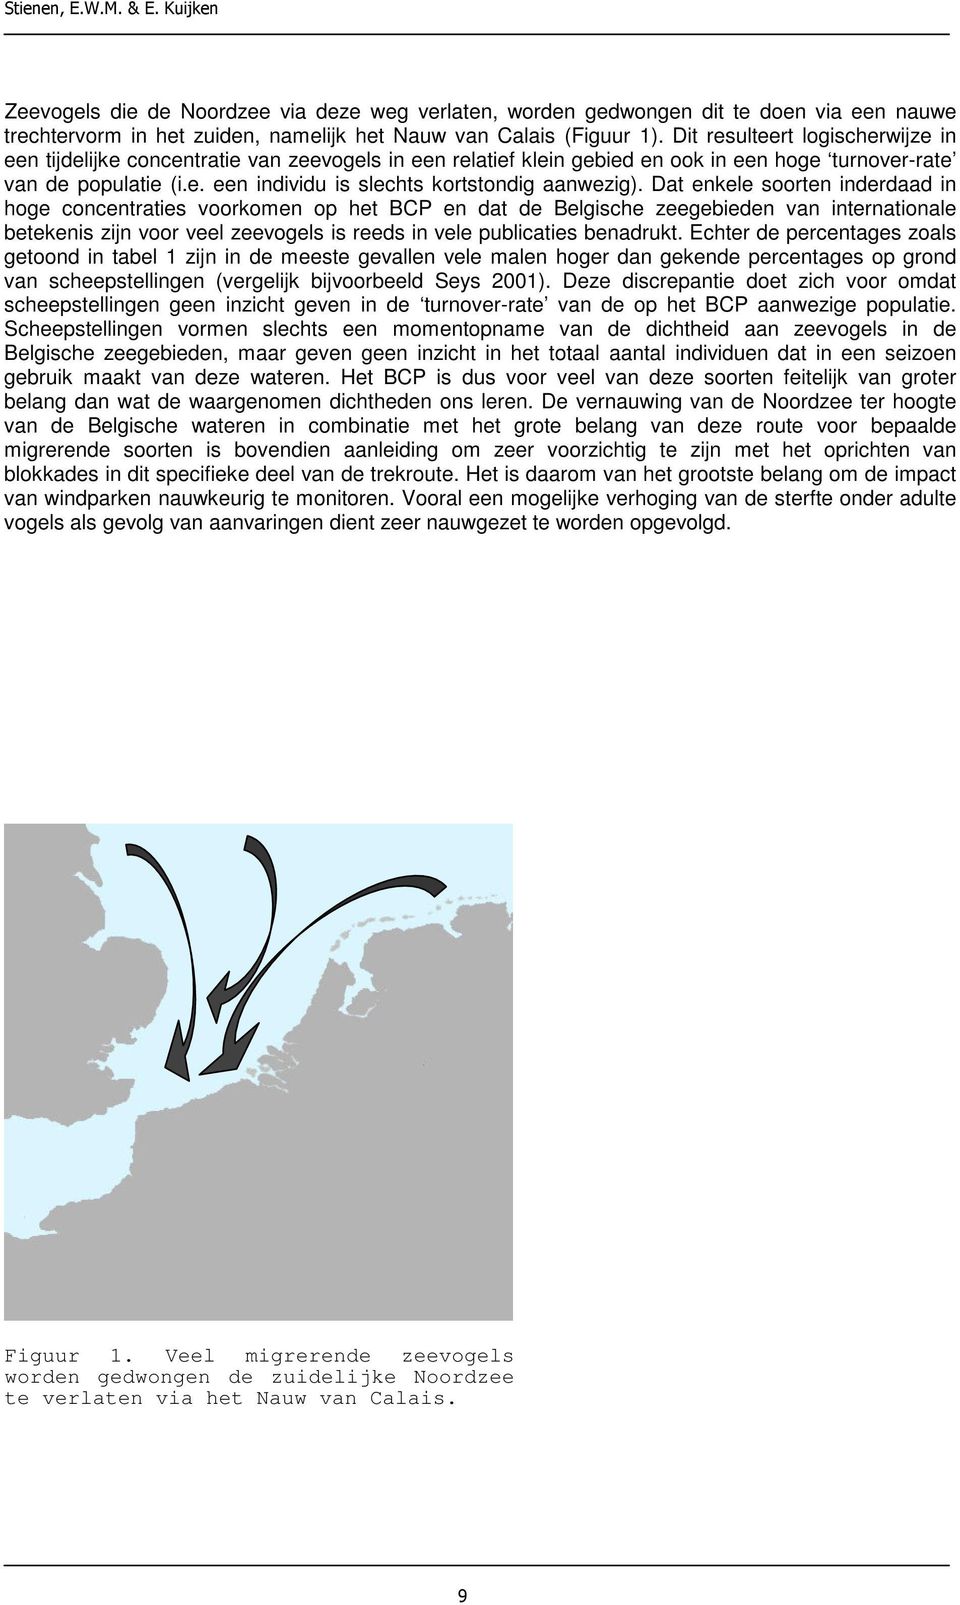 Dat enkele soorten inderdaad in hoge concentraties voorkomen op het en dat de Belgische zeegebieden van internationale betekenis zijn voor veel zeevogels is reeds in vele publicaties benadrukt.